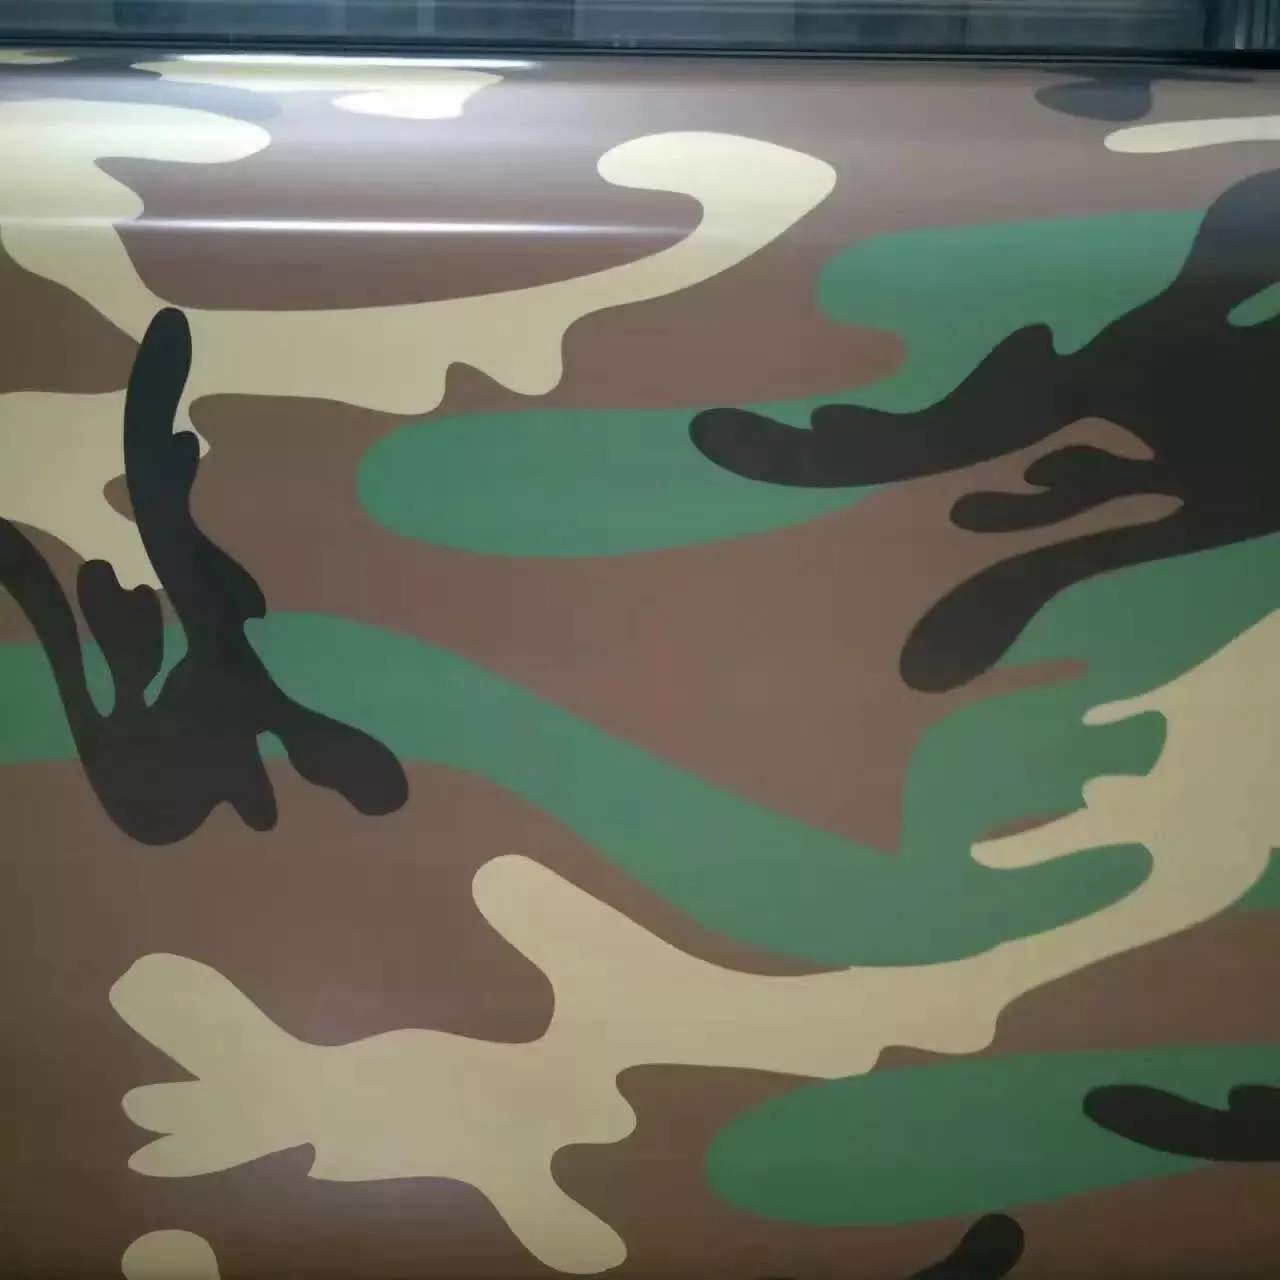 Grote sneeuw bos camo vinyl wrap full car verpakking camouflage leger folie stickers met lucht gratis maat 1,52 x 30m / roll gratis verzending